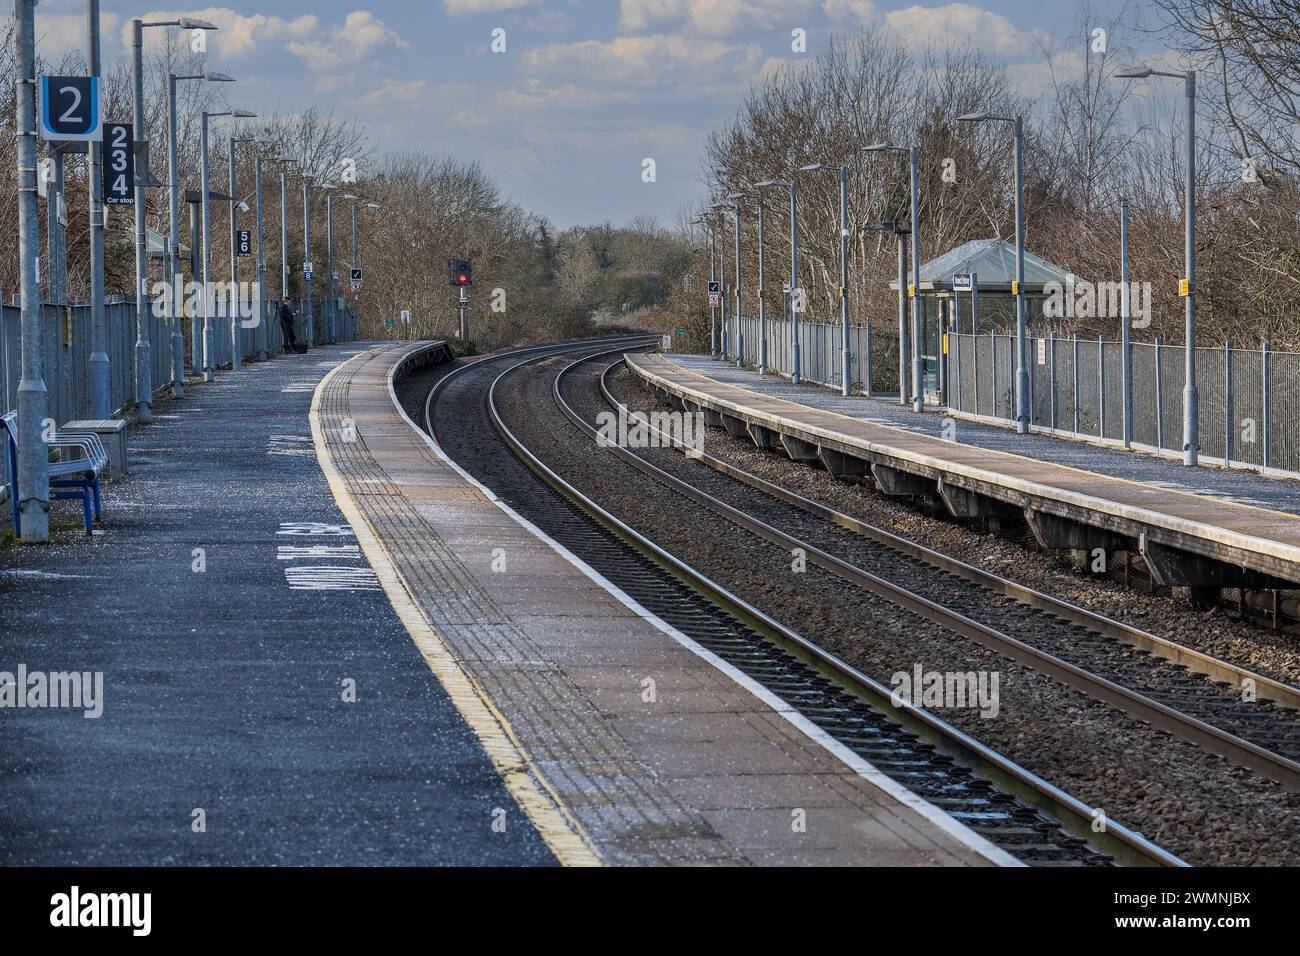 gare ferroviaire de banlieue à moteur diesel warwick parkway warwickshire angleterre royaume-uni Banque D'Images